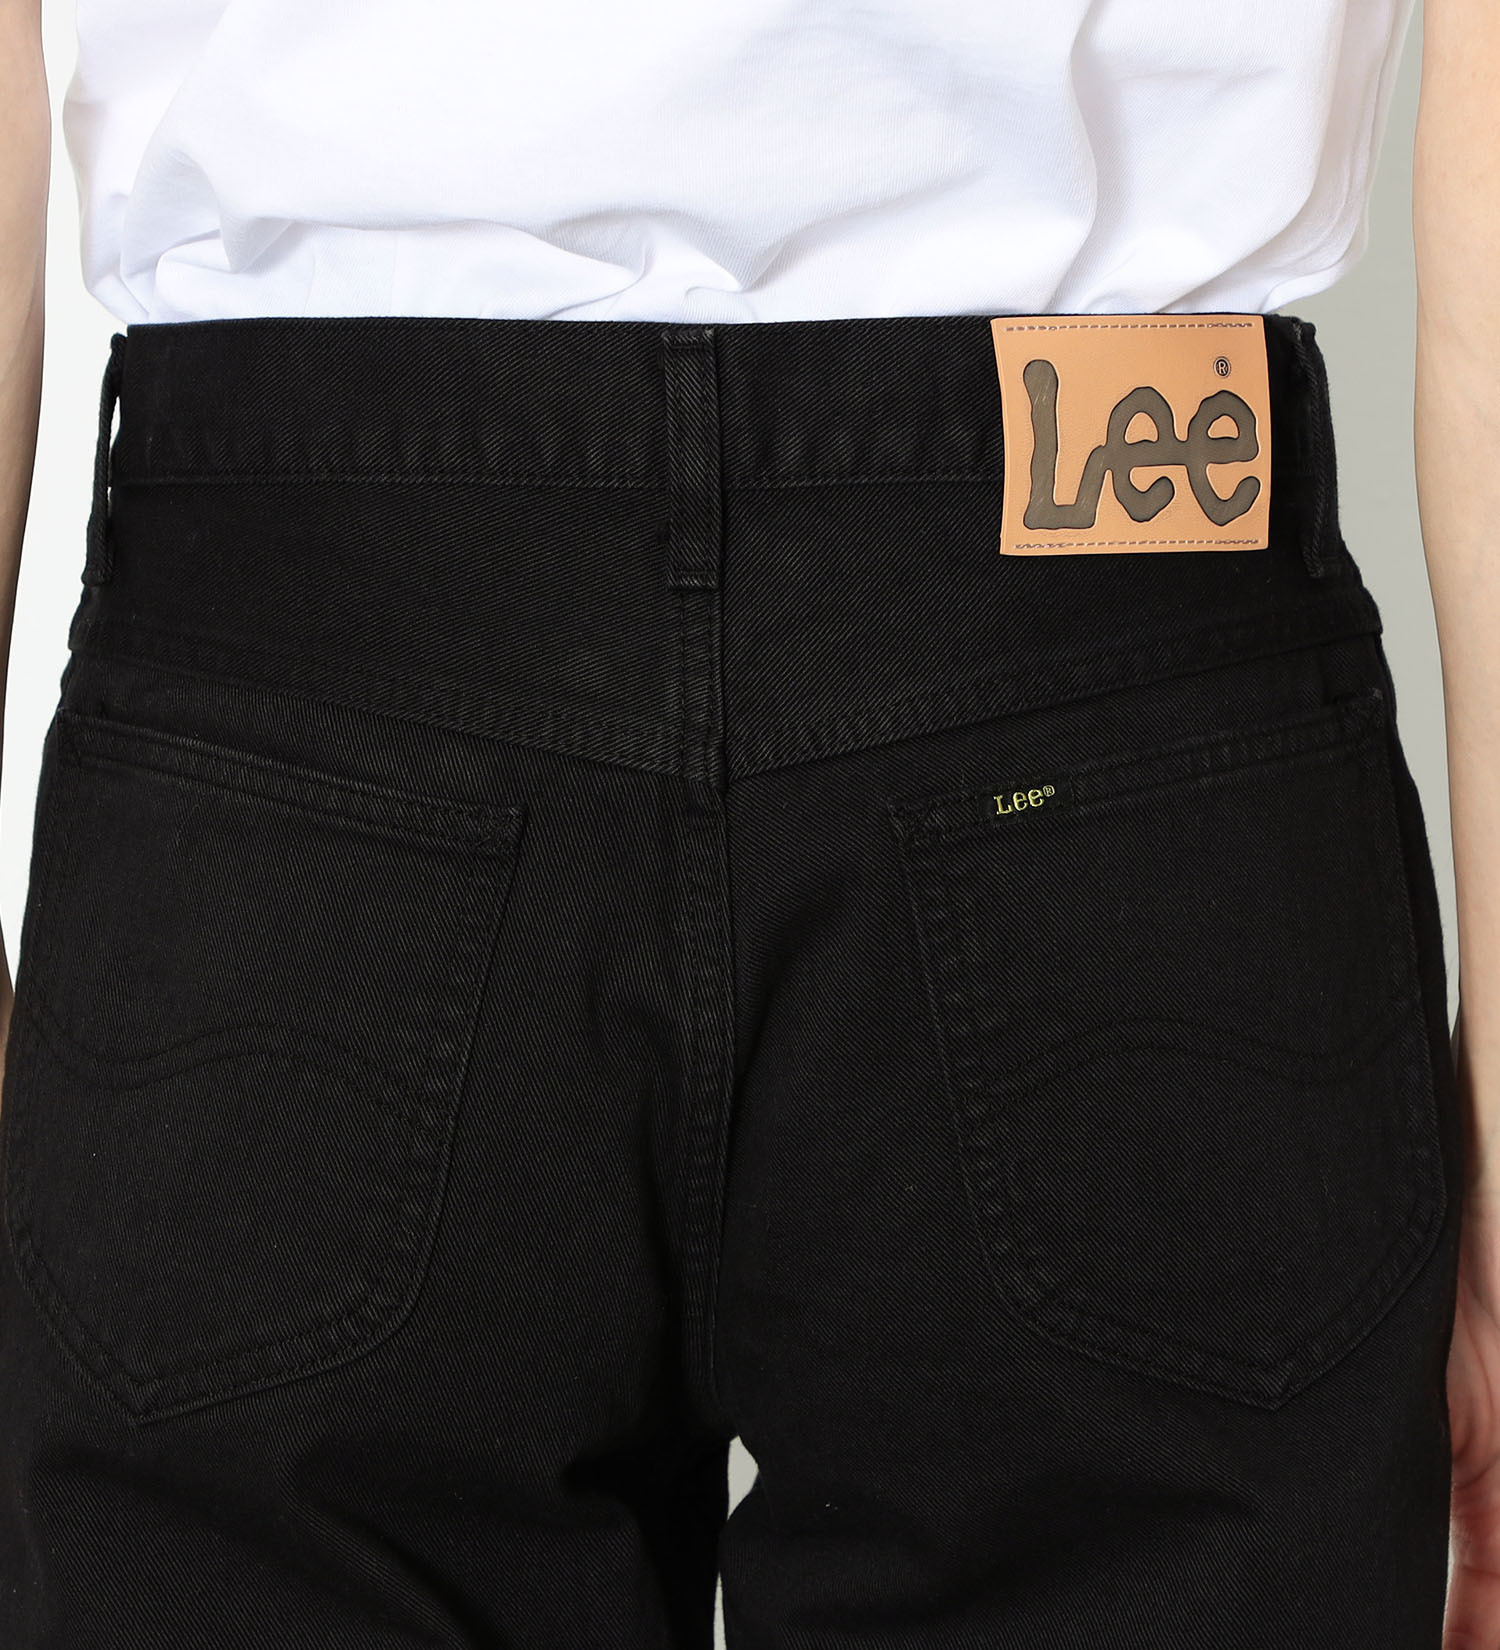 Lee(リー)の【試着対象】AMERICAN STANDARD 201 ストレートツイルパンツ|パンツ/パンツ/メンズ|ブラック